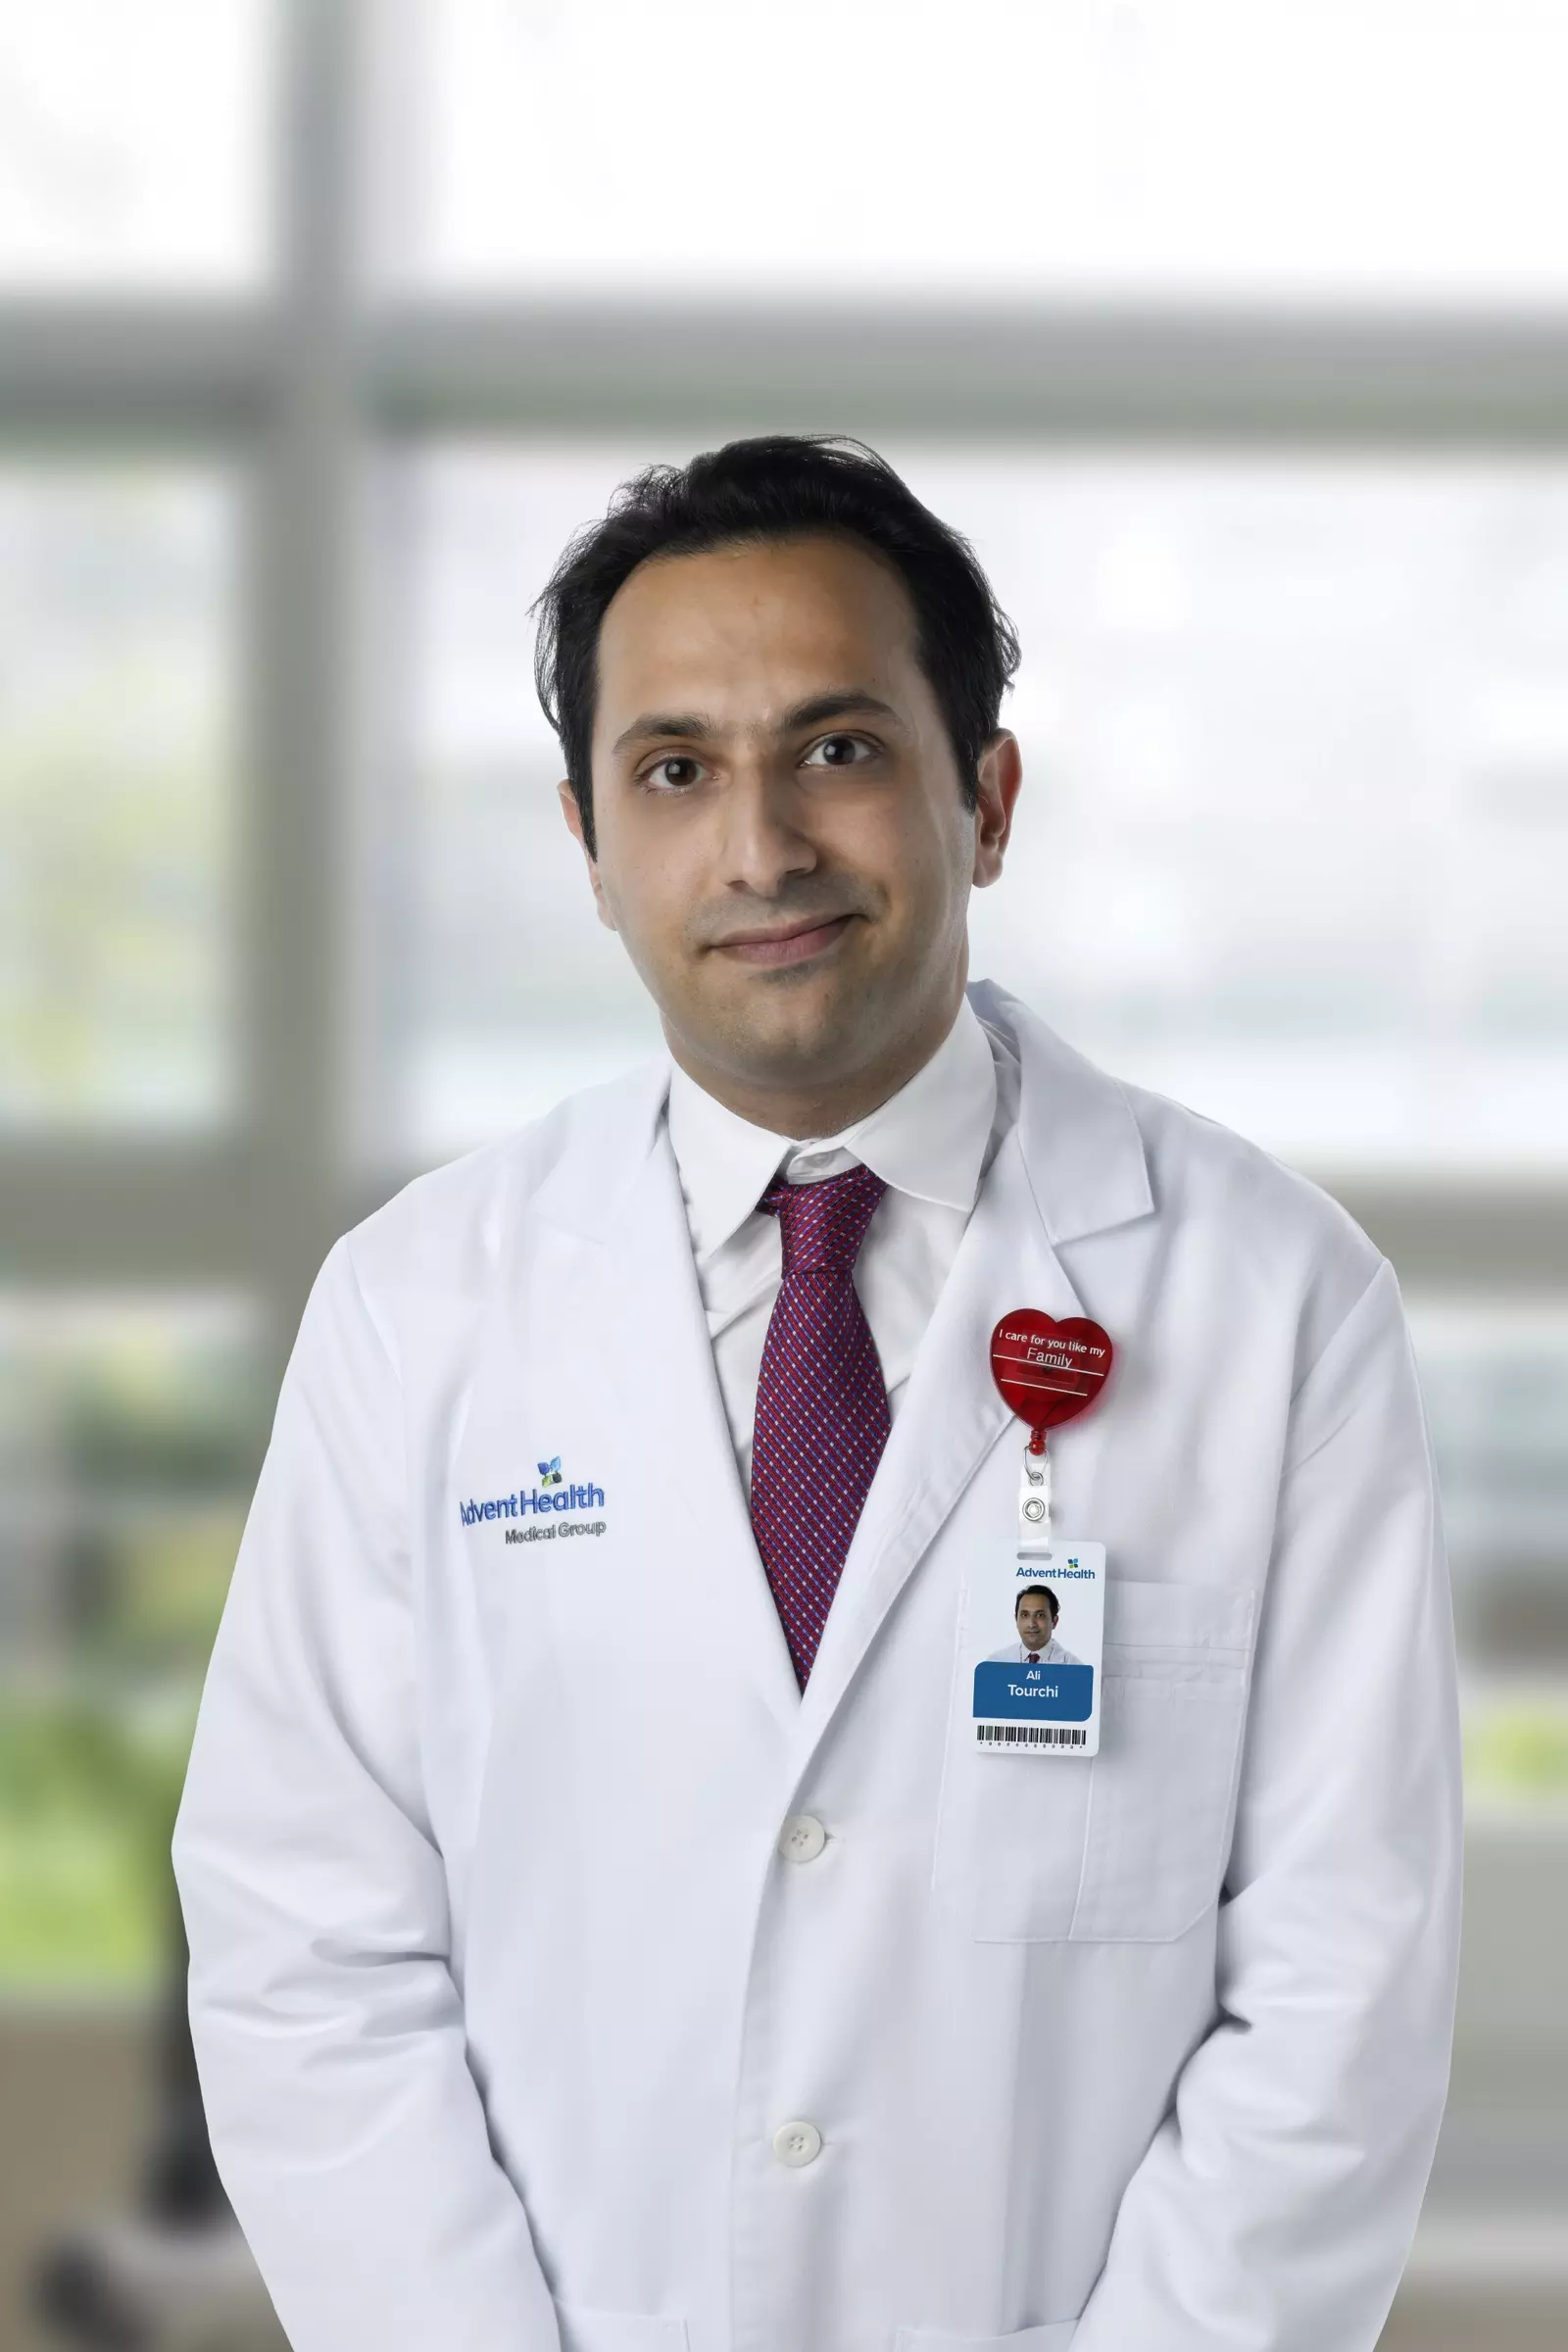 Dr. Ali Tourchi headshot